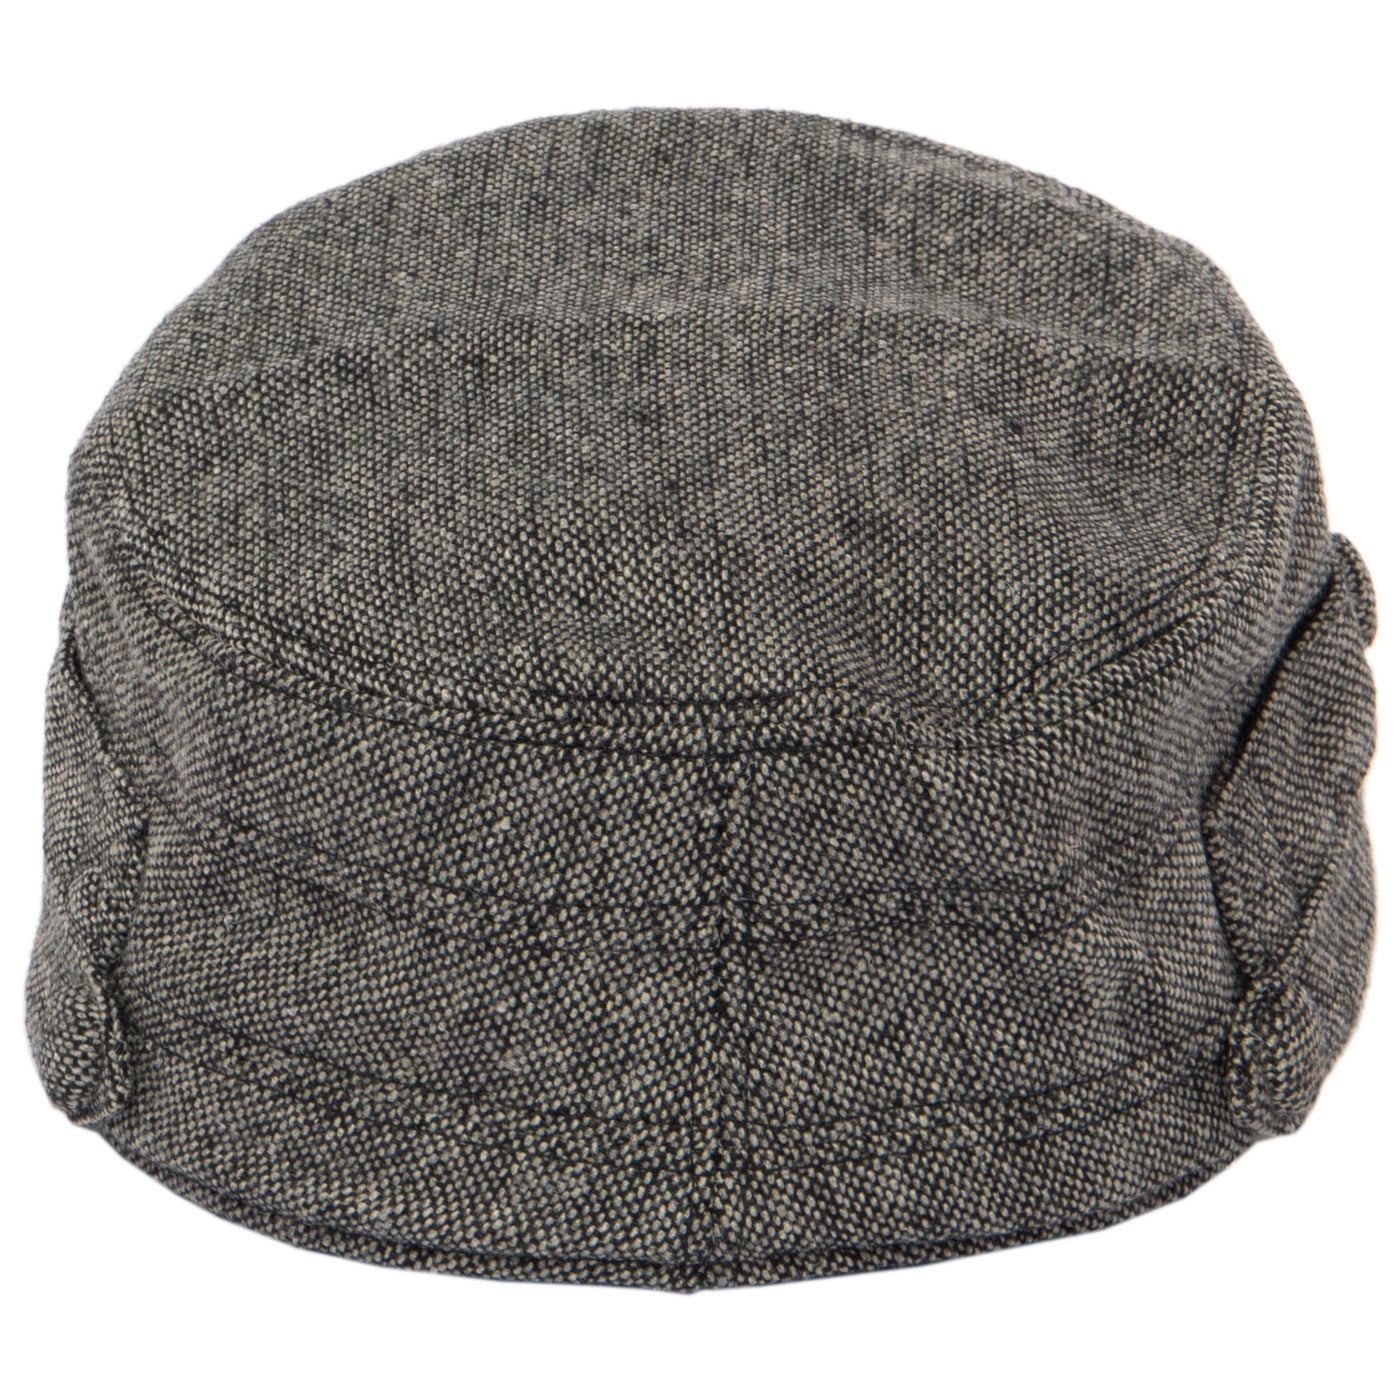 CAP - Women's Speckled Tweed Cap